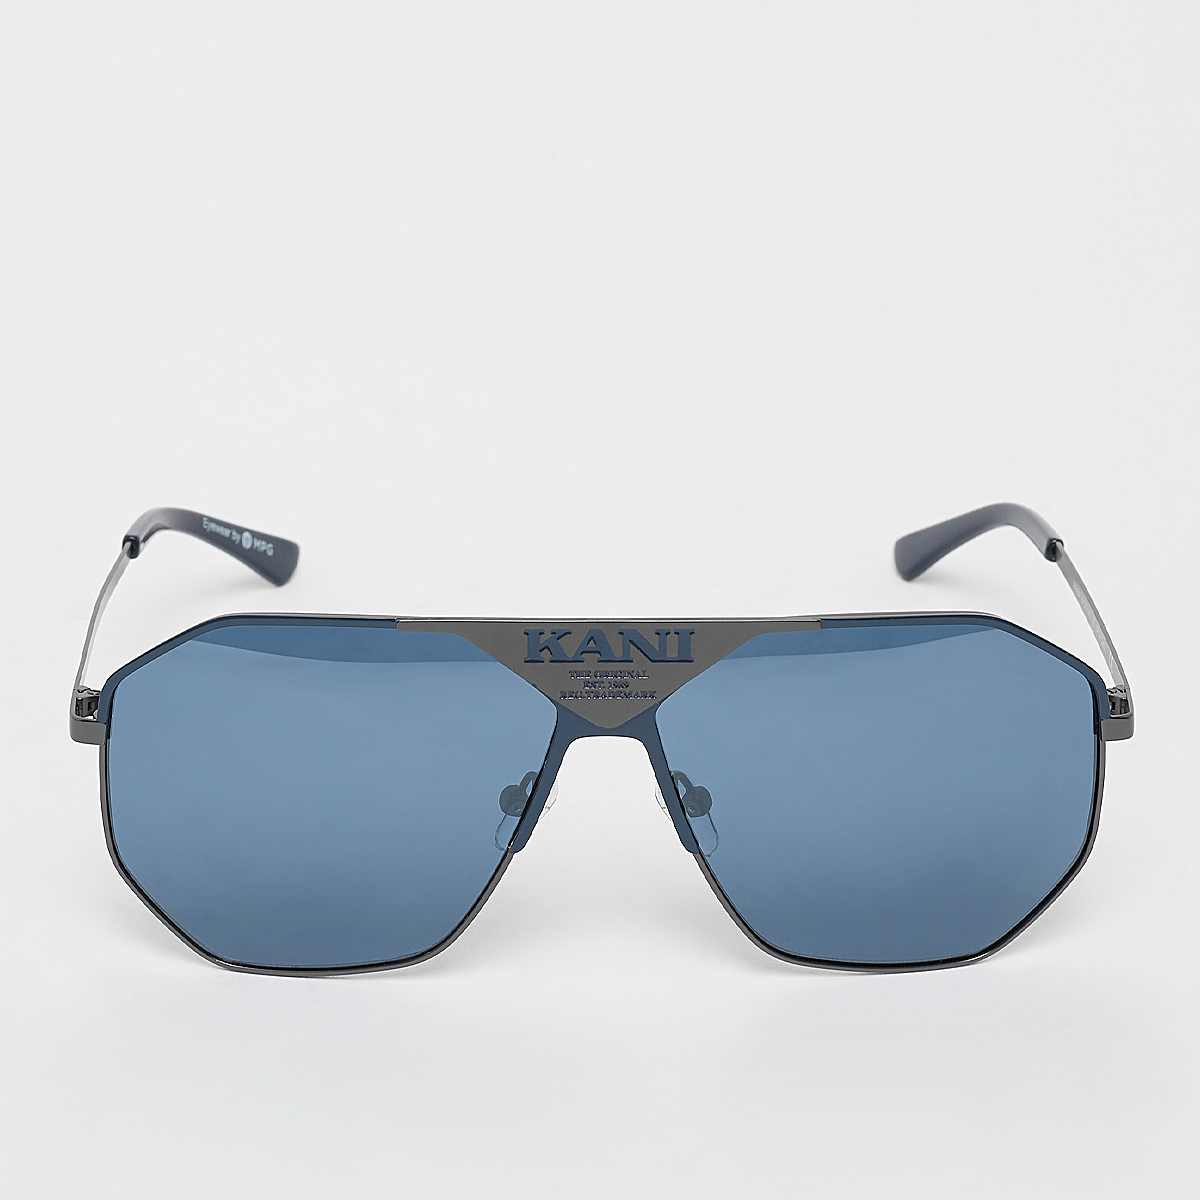 lunettes de soleil aviateur - grise, bleue